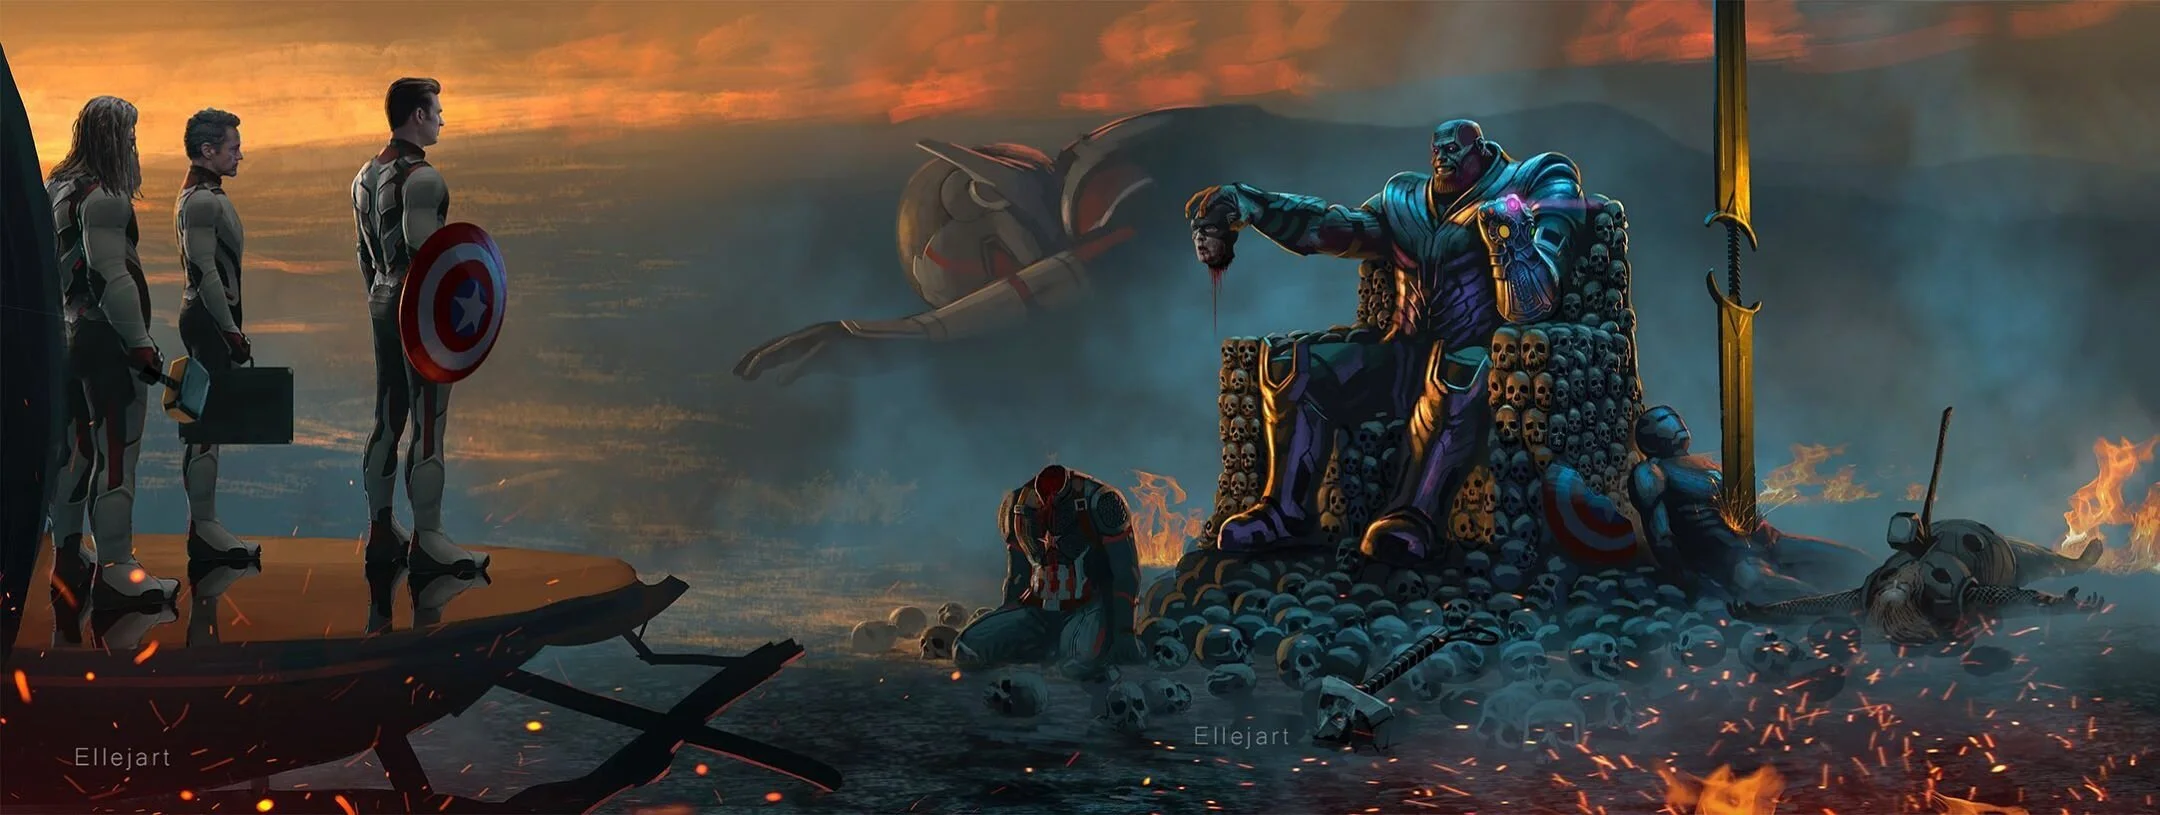 Фанат нарисовал вырезанную из «Финала» сцену, в которой Танос держит отрубленную голову Кэпа - фото 1